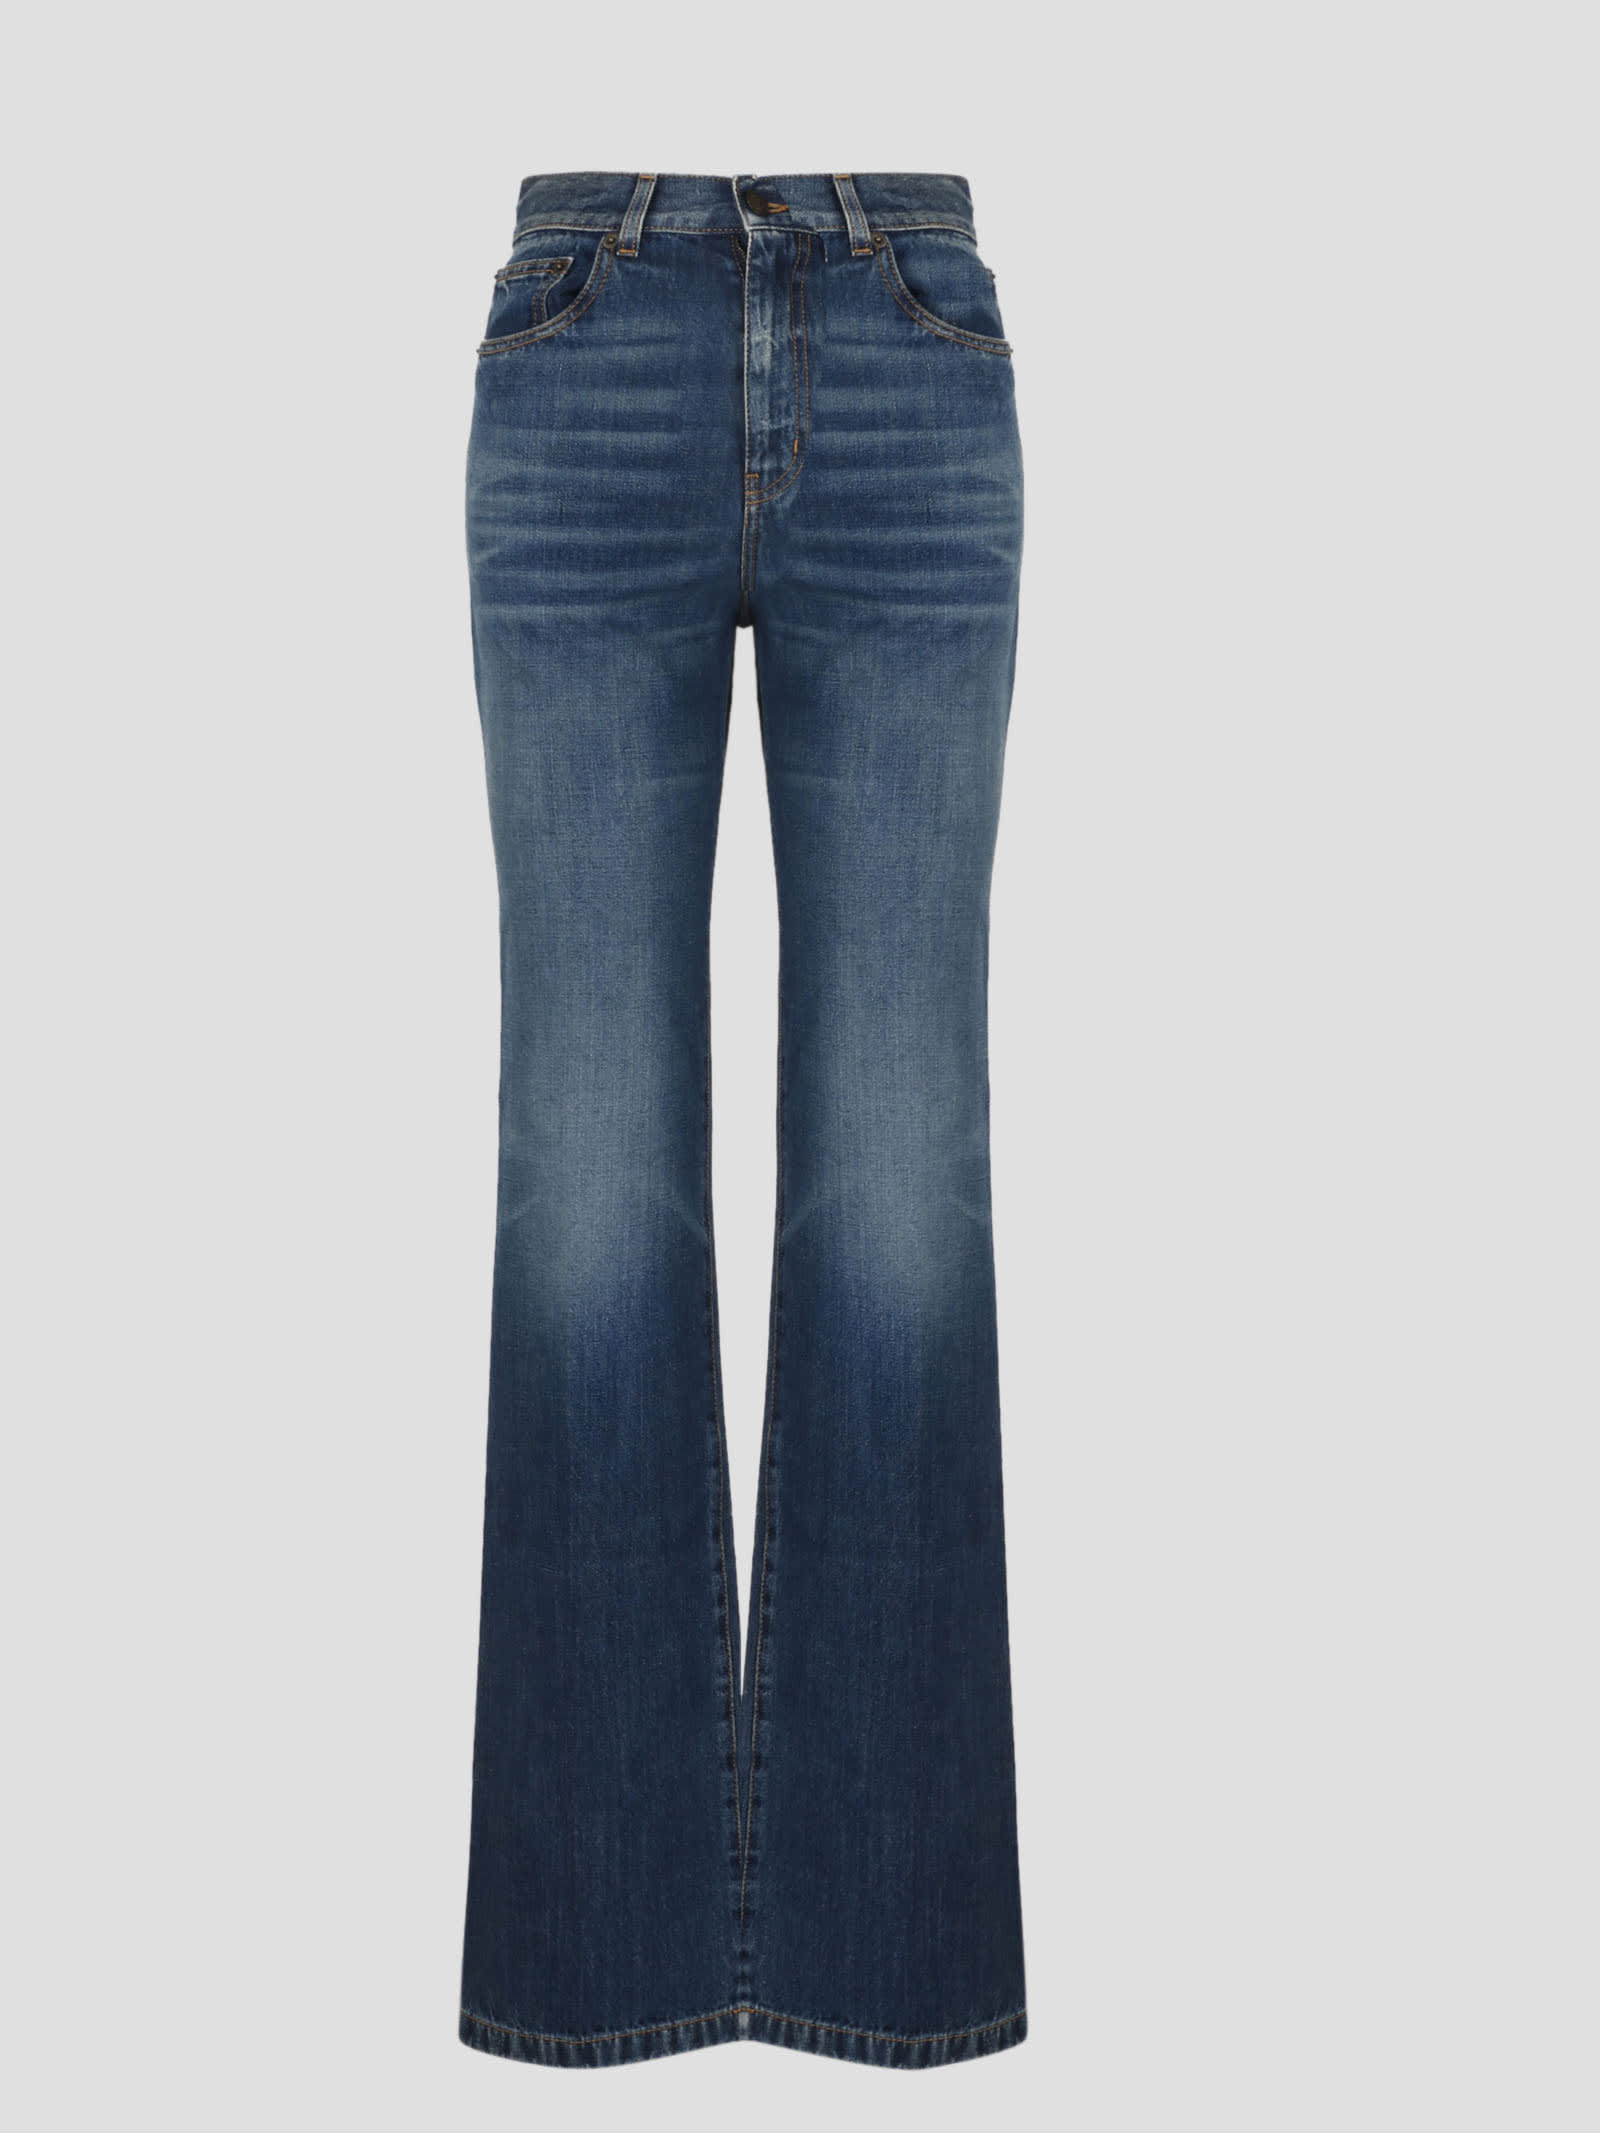 Saint Laurent Clyde Jeans